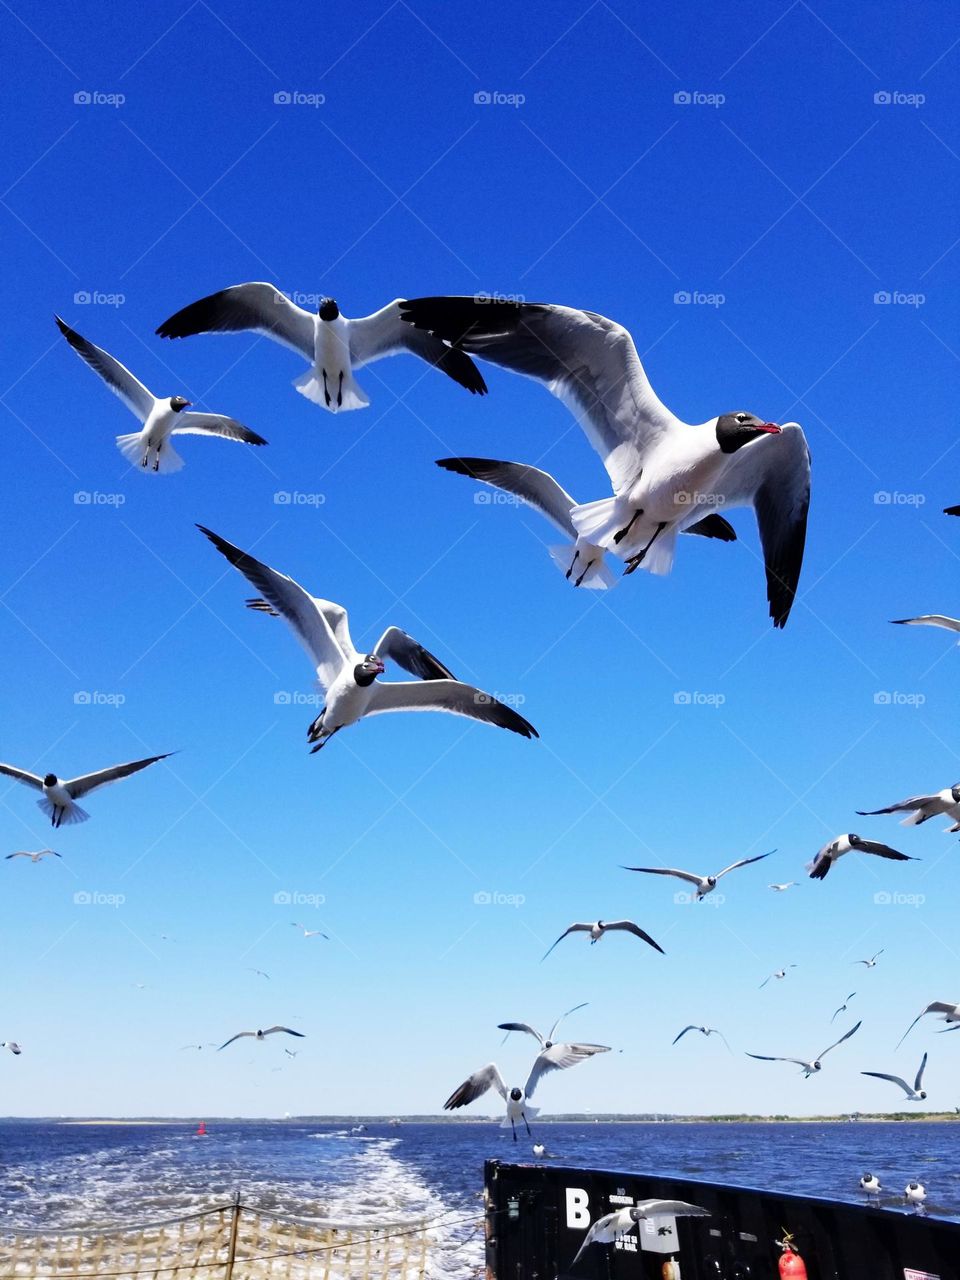 birds in flights